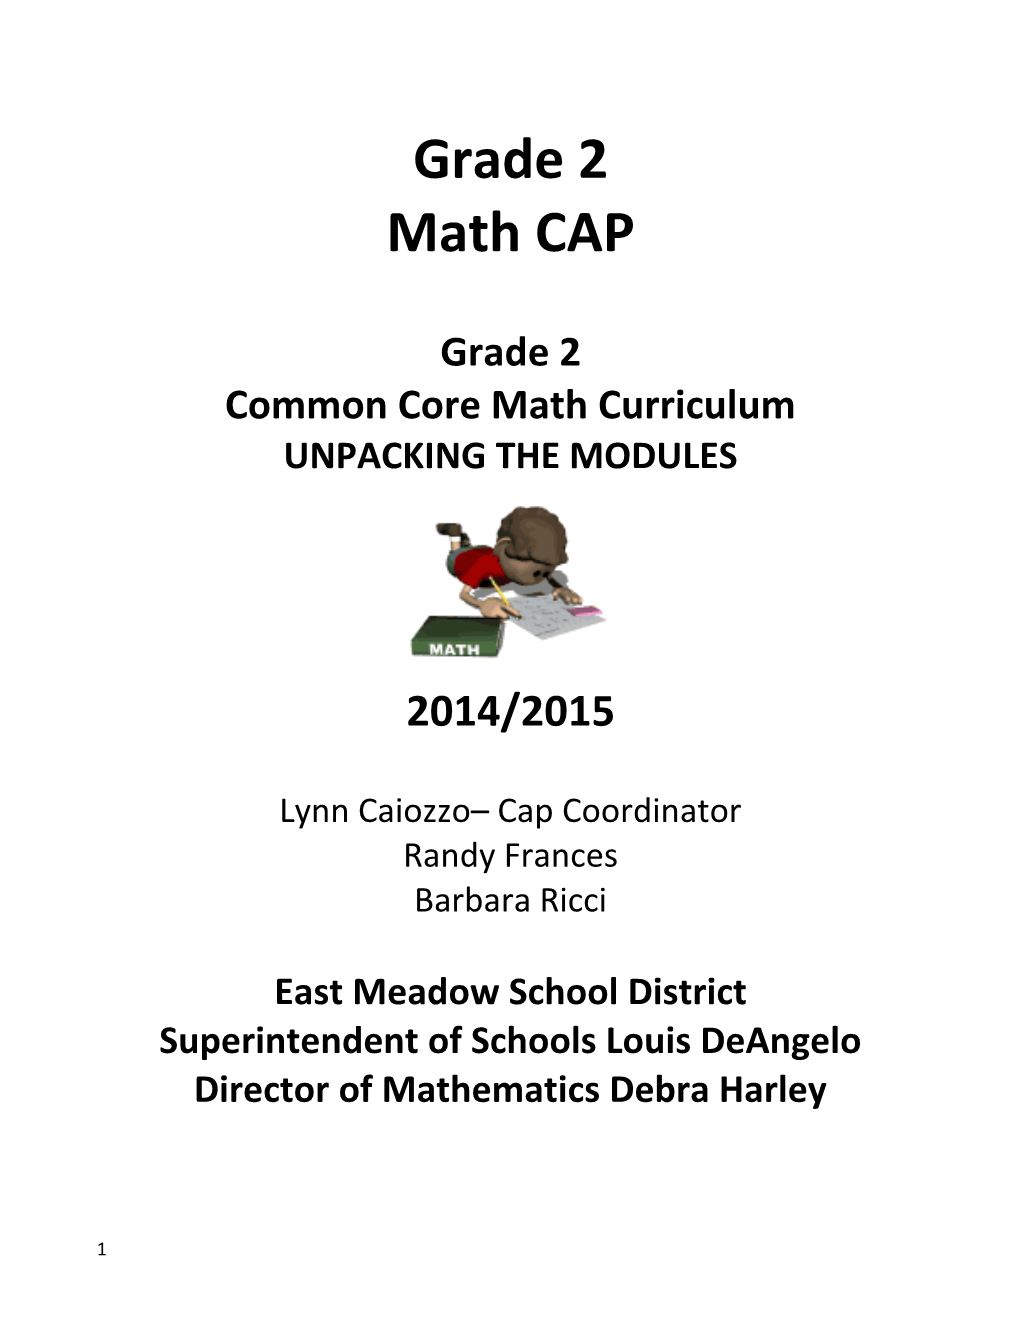 Common Core Math Curriculum